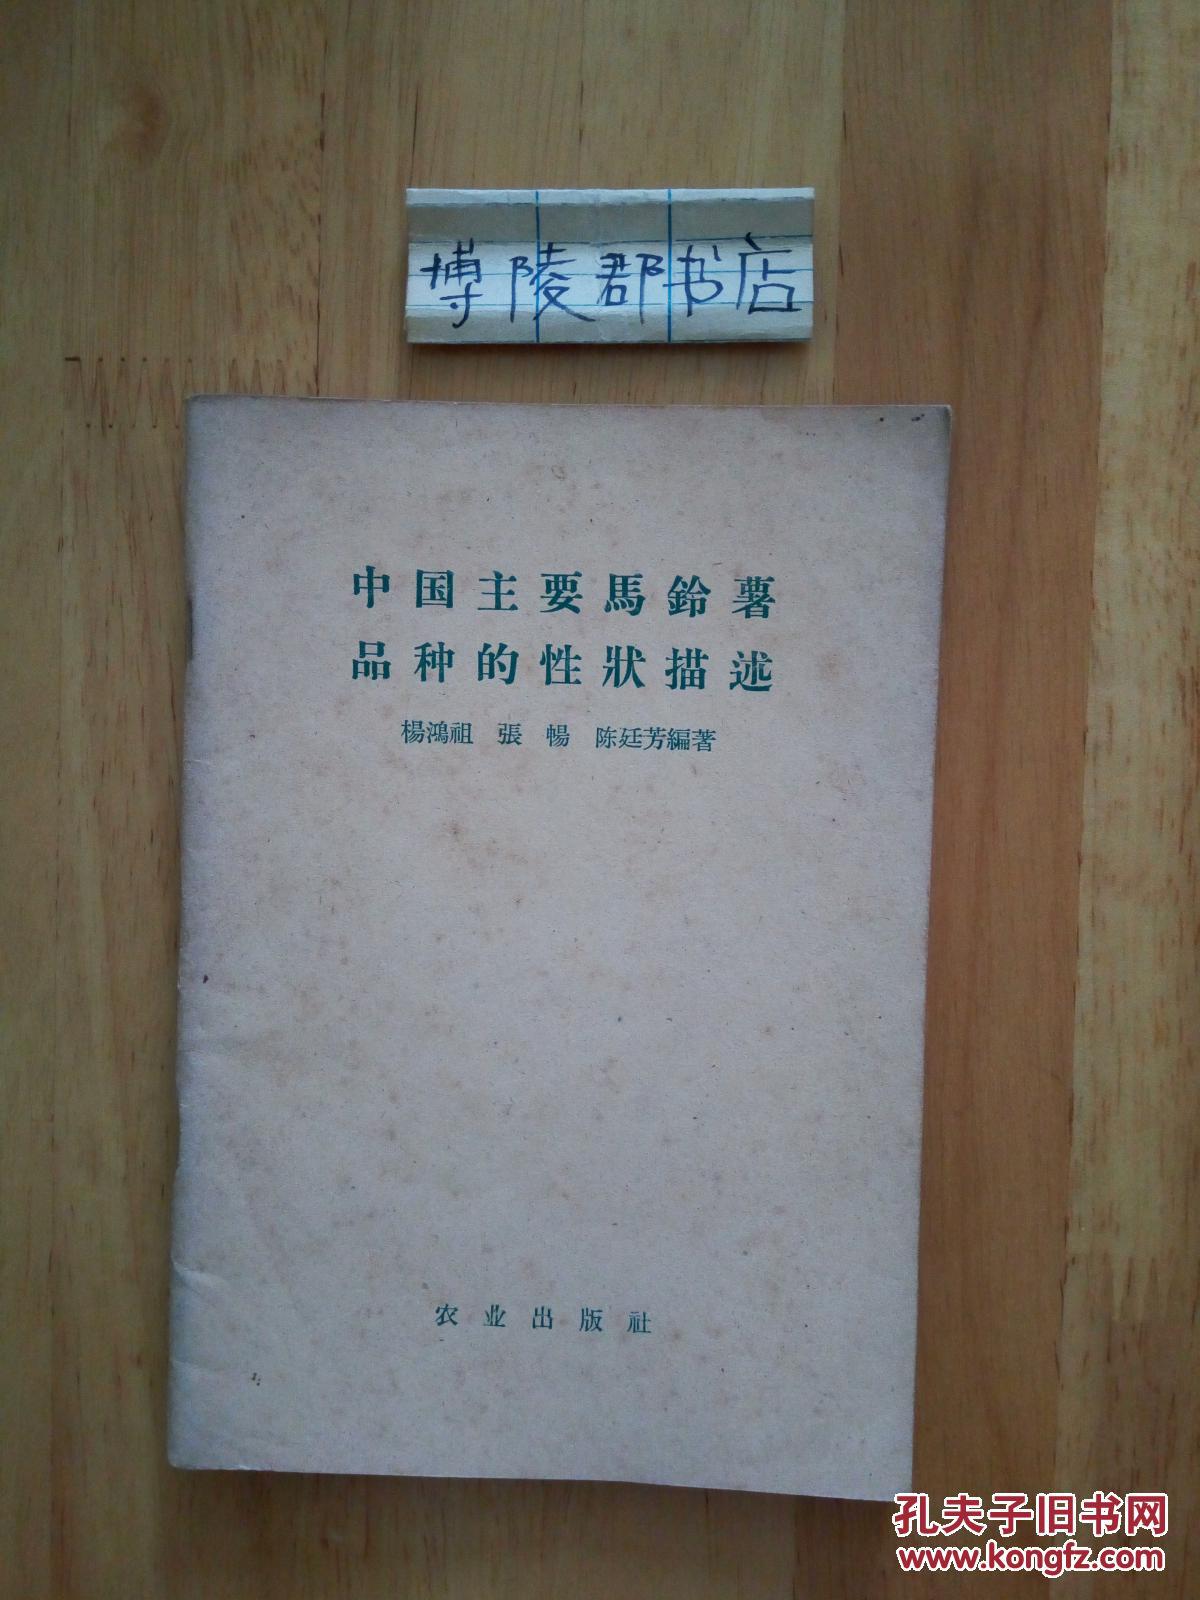 1958年 中国主要马铃薯品种的性状描述